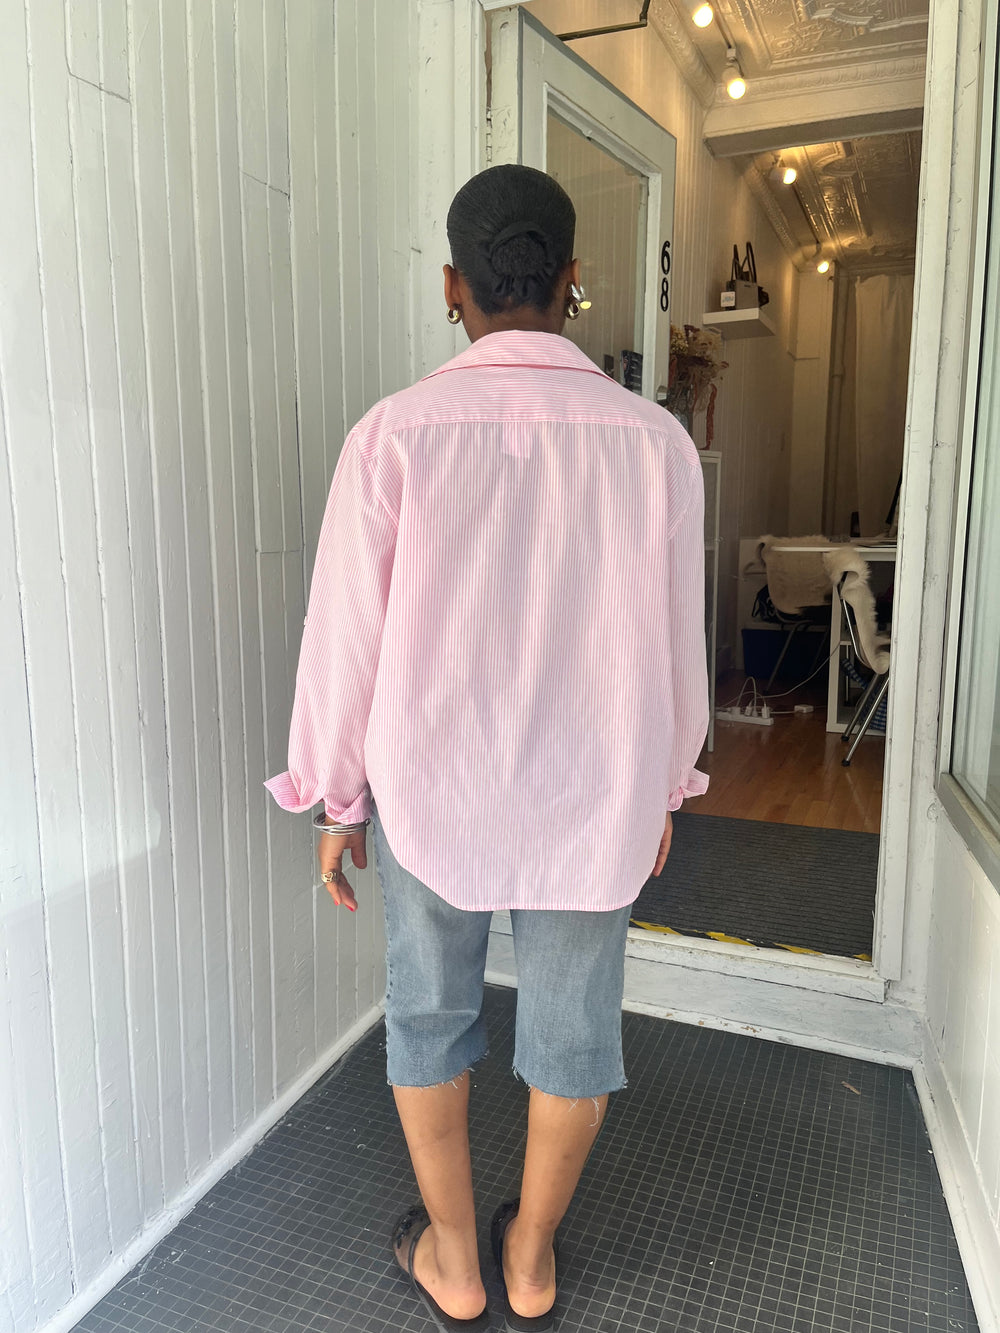 Cute pink shirt